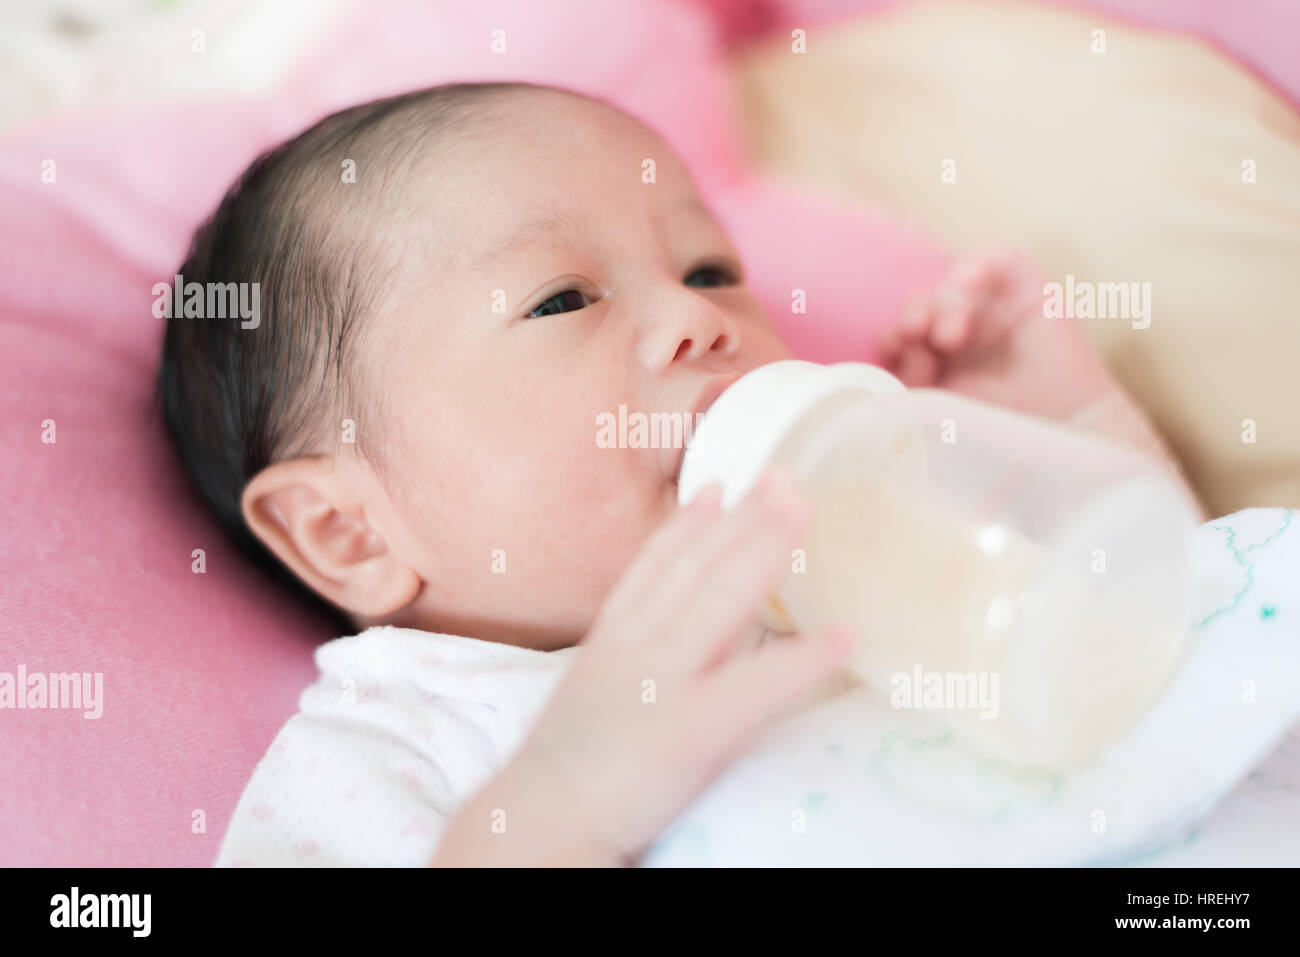 Asiatique 1 mois bébé garçon enfant de manger. Banque D'Images